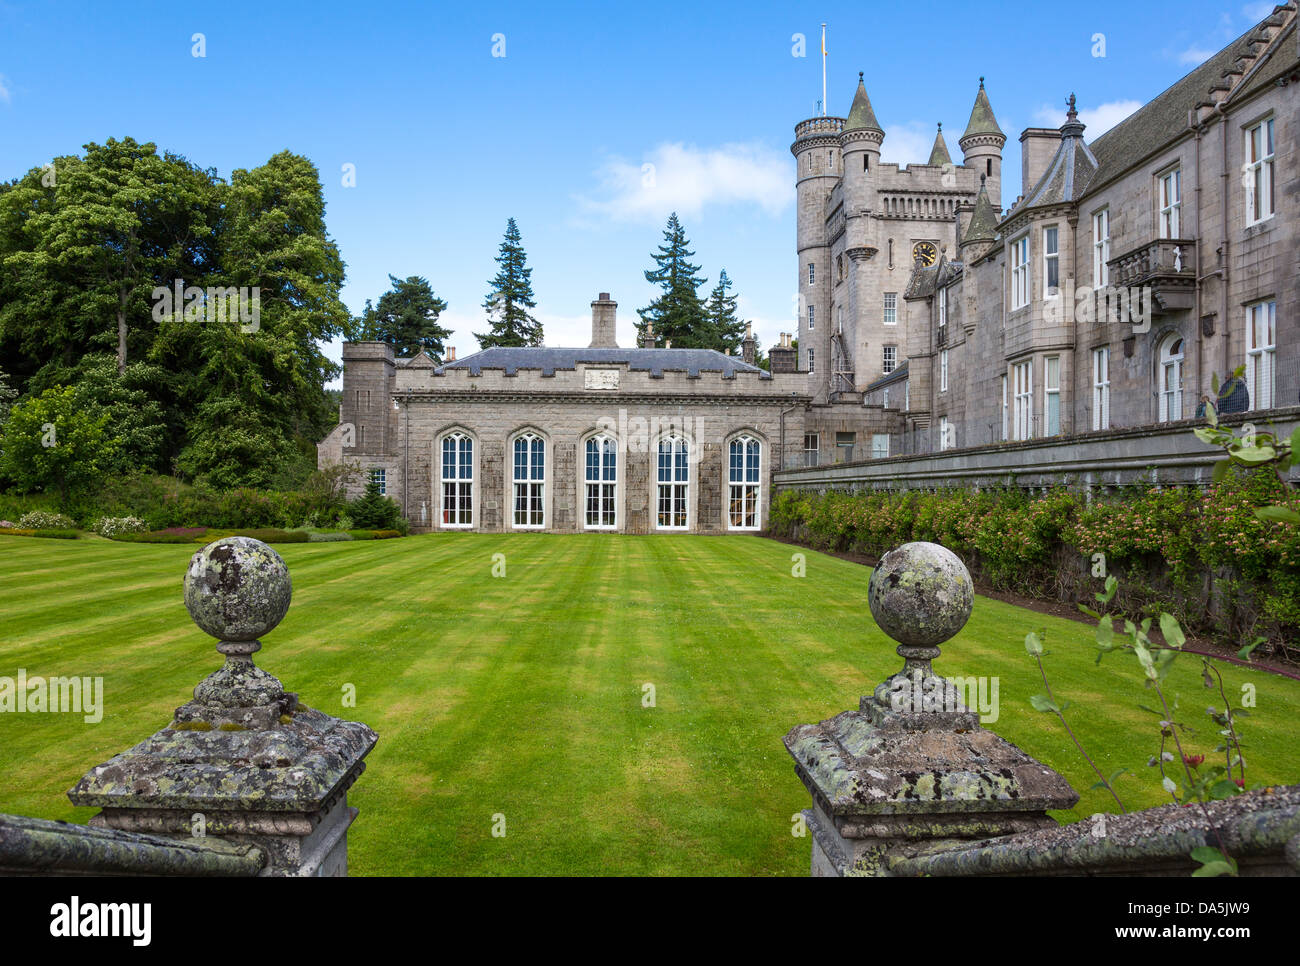 Europa Gran Bretaña, Escocia, aberdeenshire, el castillo de Balmoral, residencia de verano de la familia real británica. Foto de stock